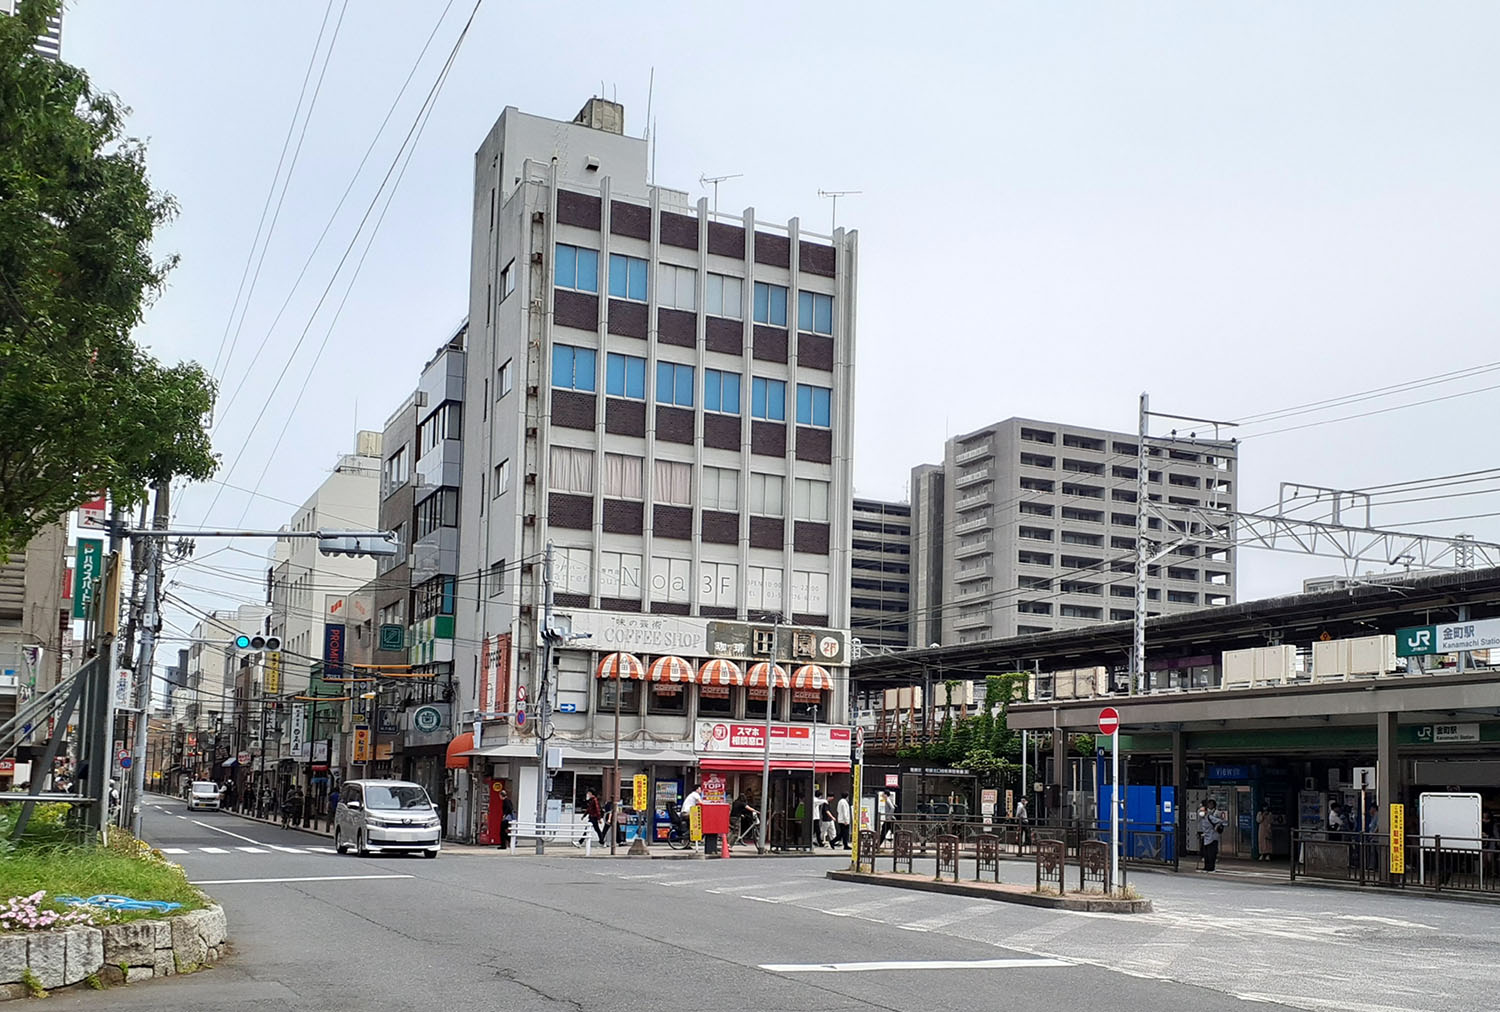 再開発で様変わりした南口に比べ、いまだに昭和の香りを残す金町駅北口。あけみを見かけたのは画像左奥の繁華街あたりか？